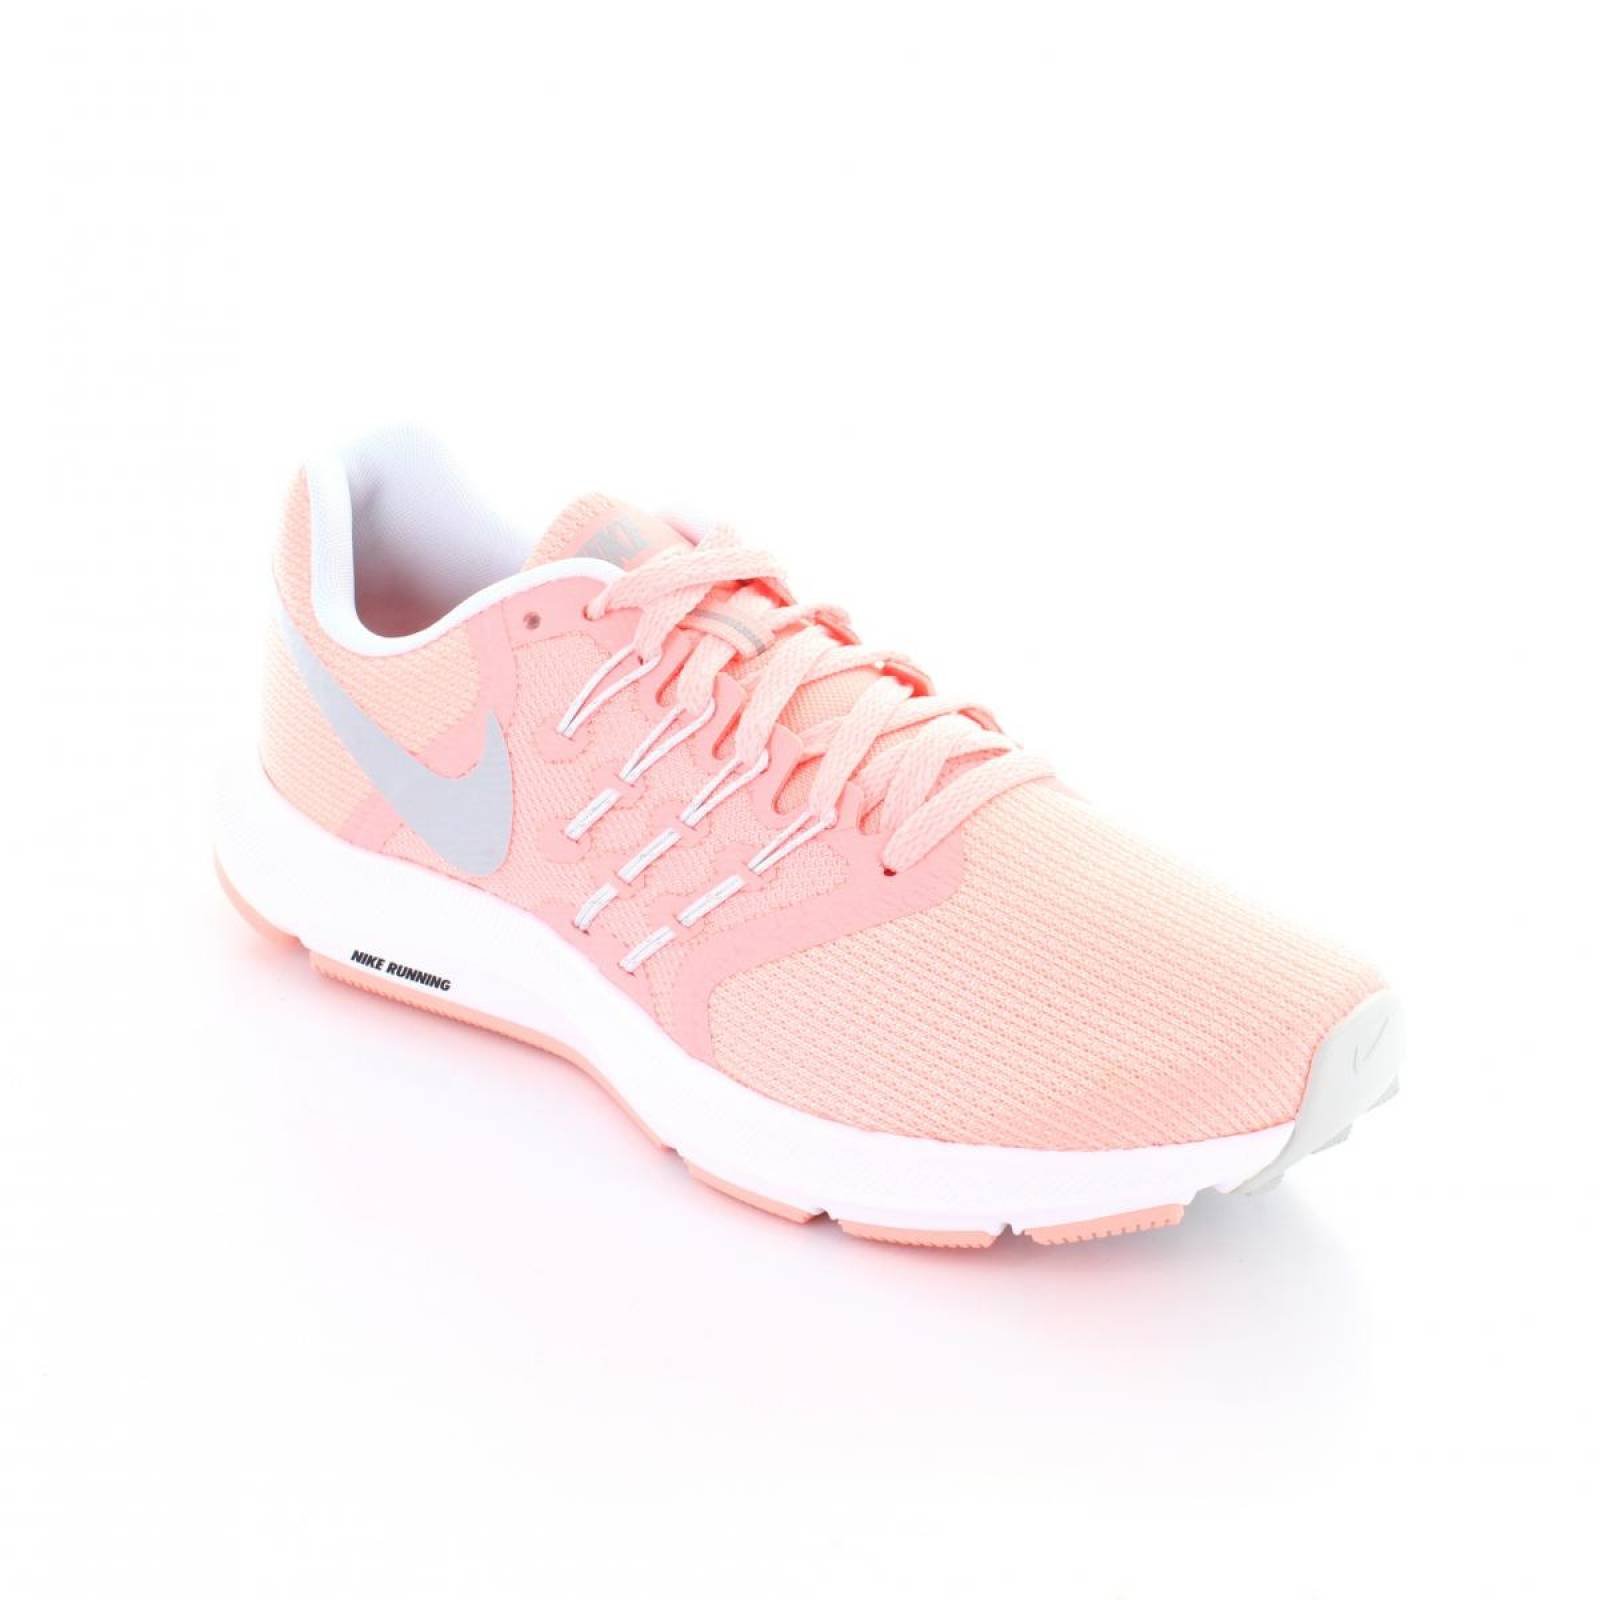 Tenis para Mujer Nike 909006 601 048893 Color Rosa